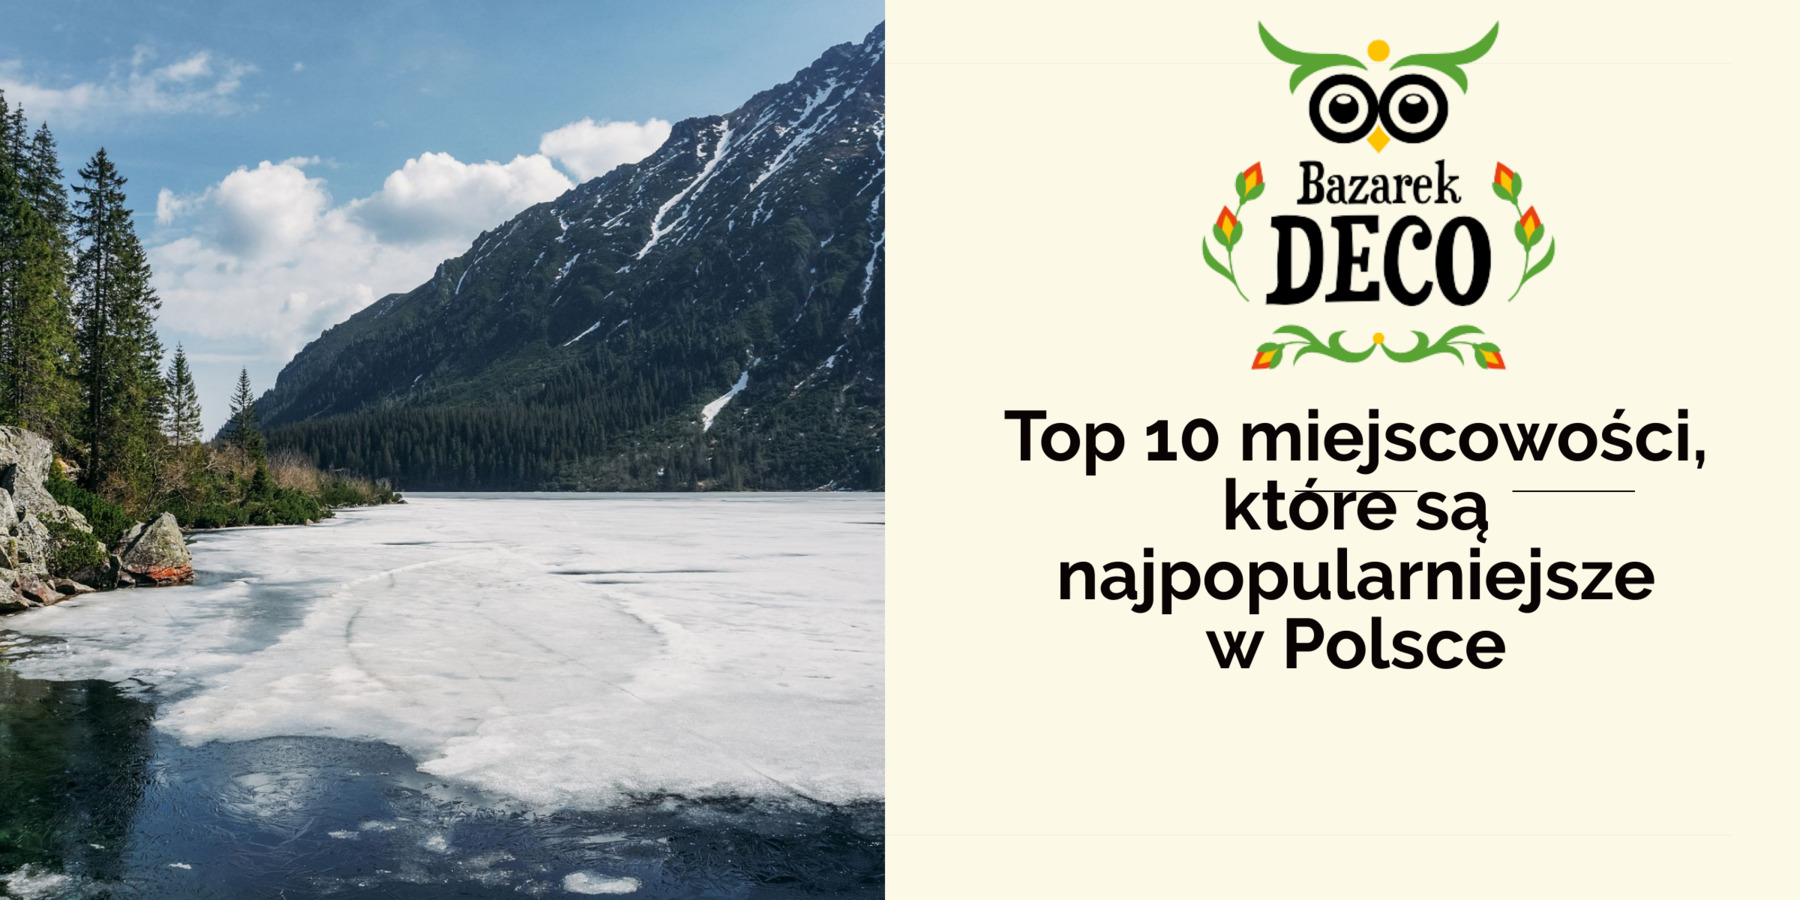 Top 10 miejscowości, które są najpopularniejsze w Polsce